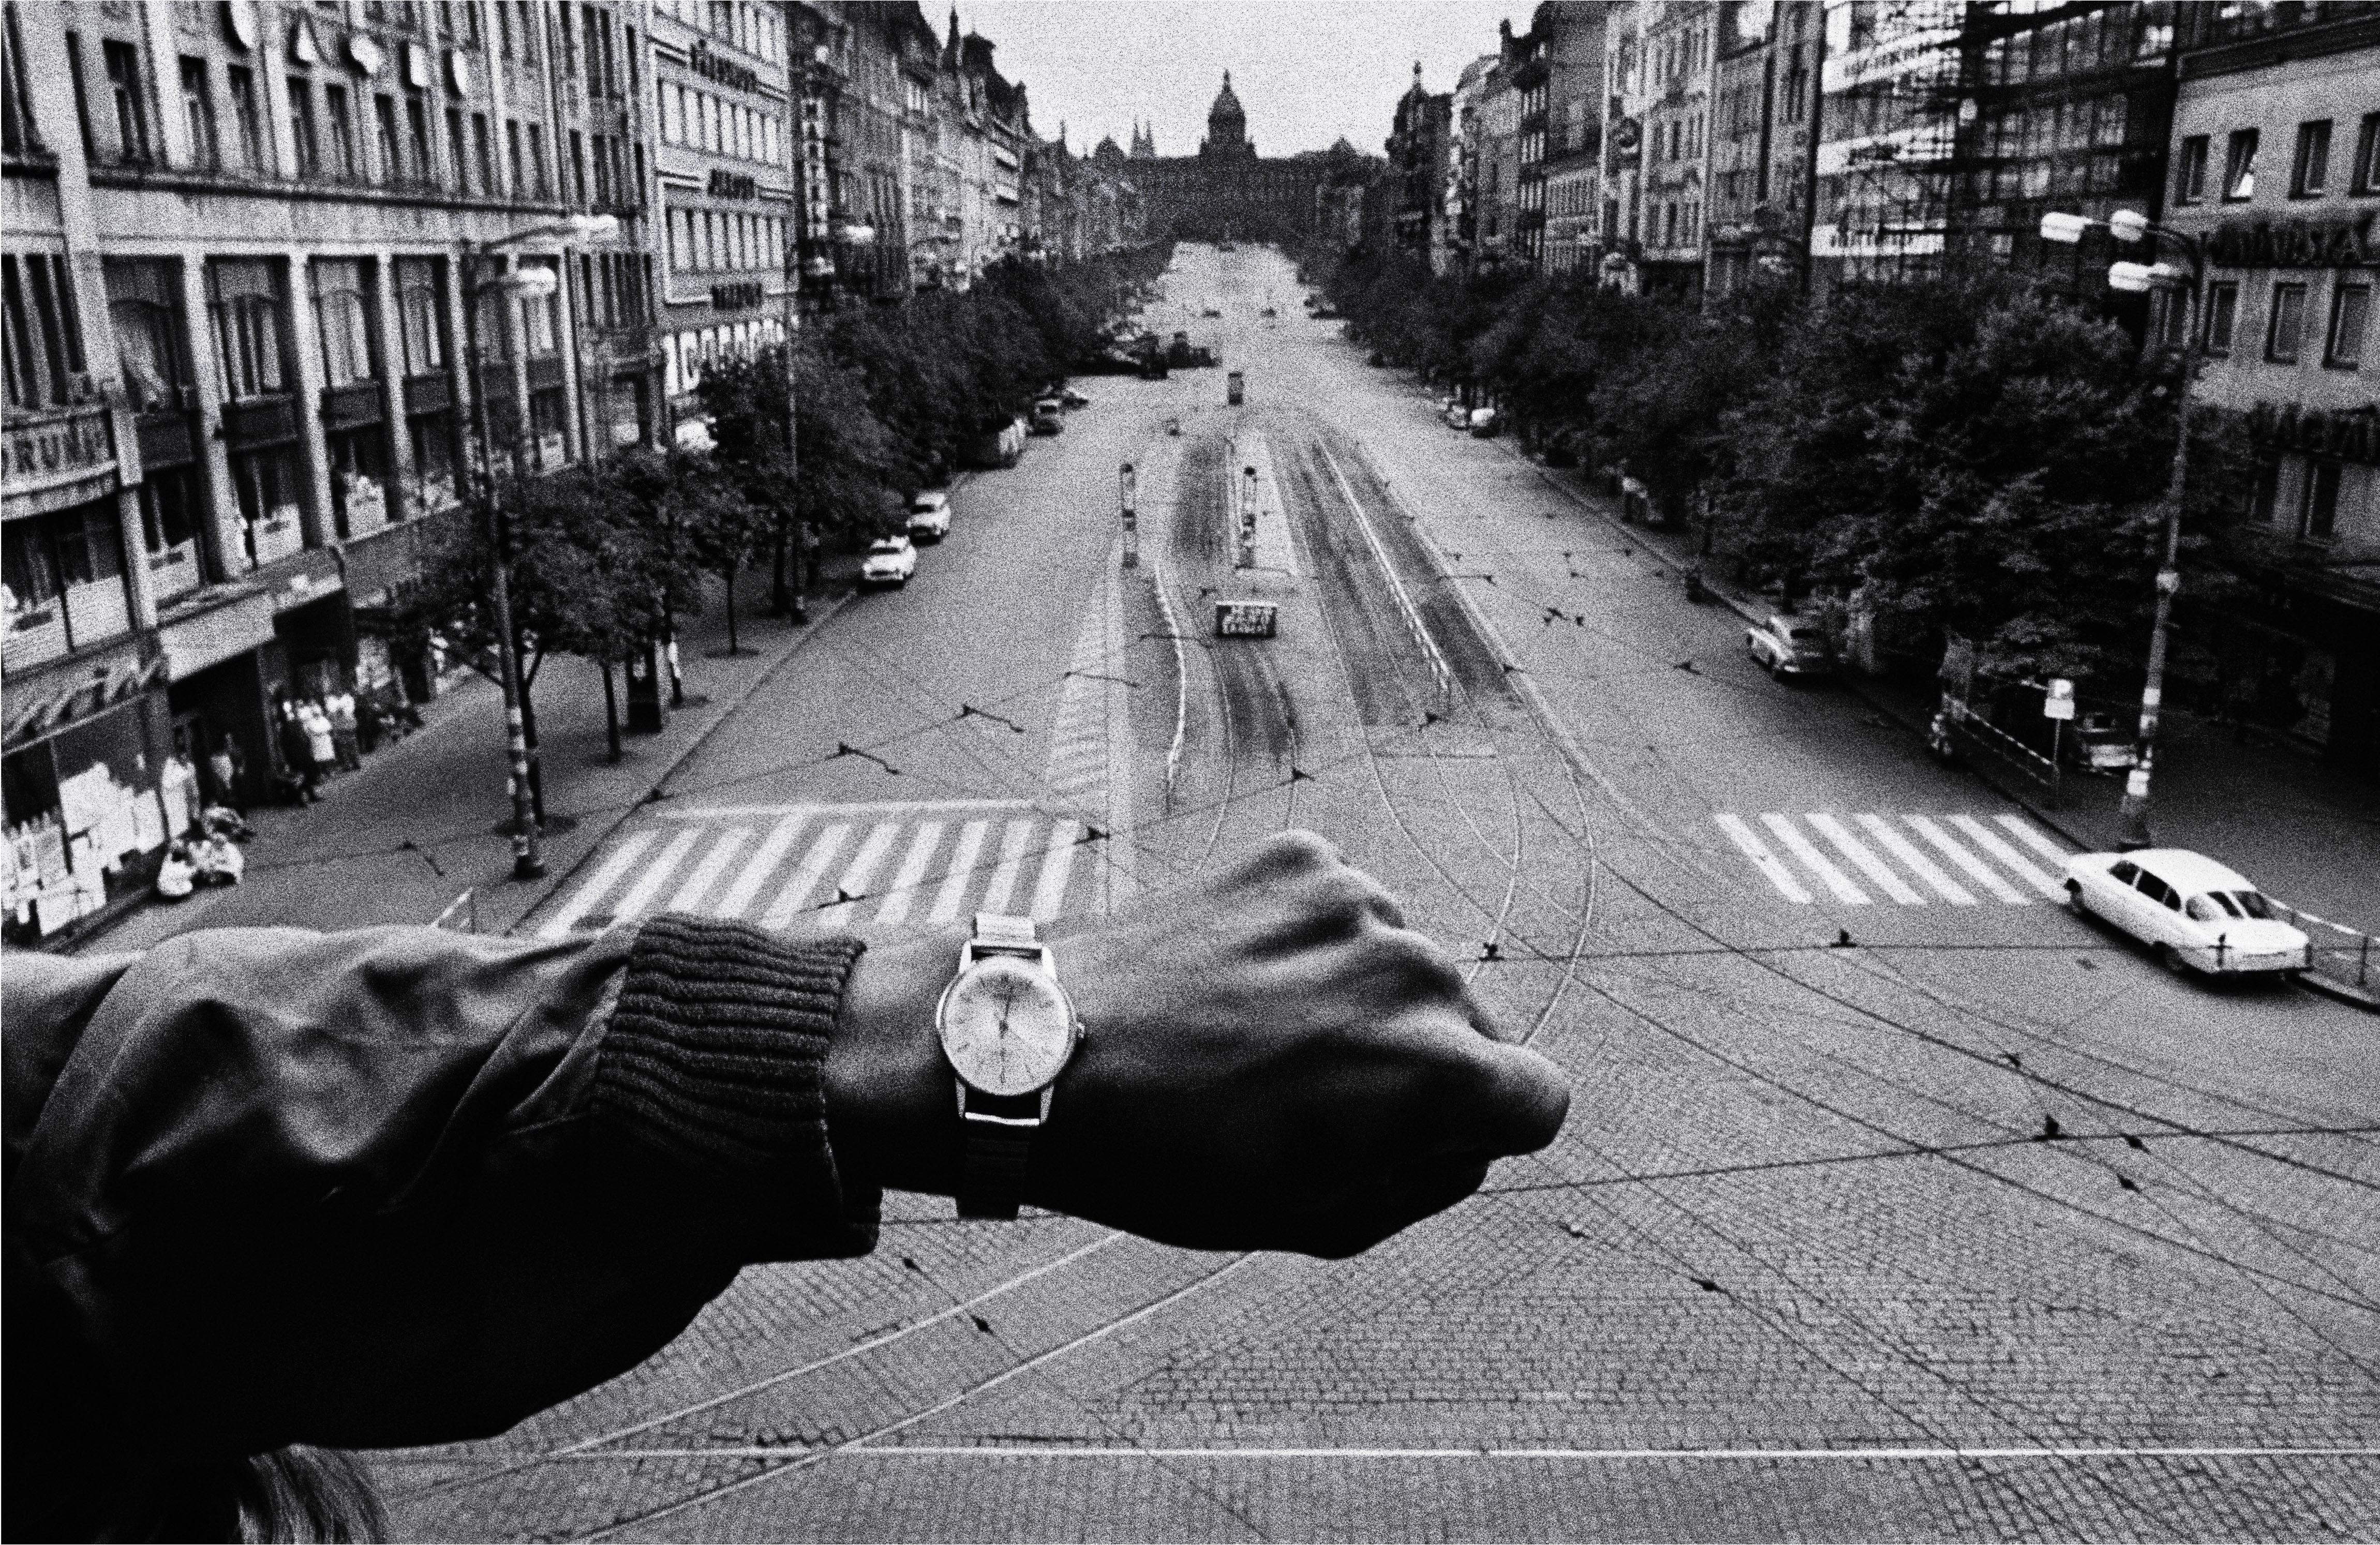 Koudelka: (Mano y reloj de pulsera), 1968, copia de 1990 Cortesía Josef Koudelka/Magnum Photos © Josef Koudelka / Magnum Photos